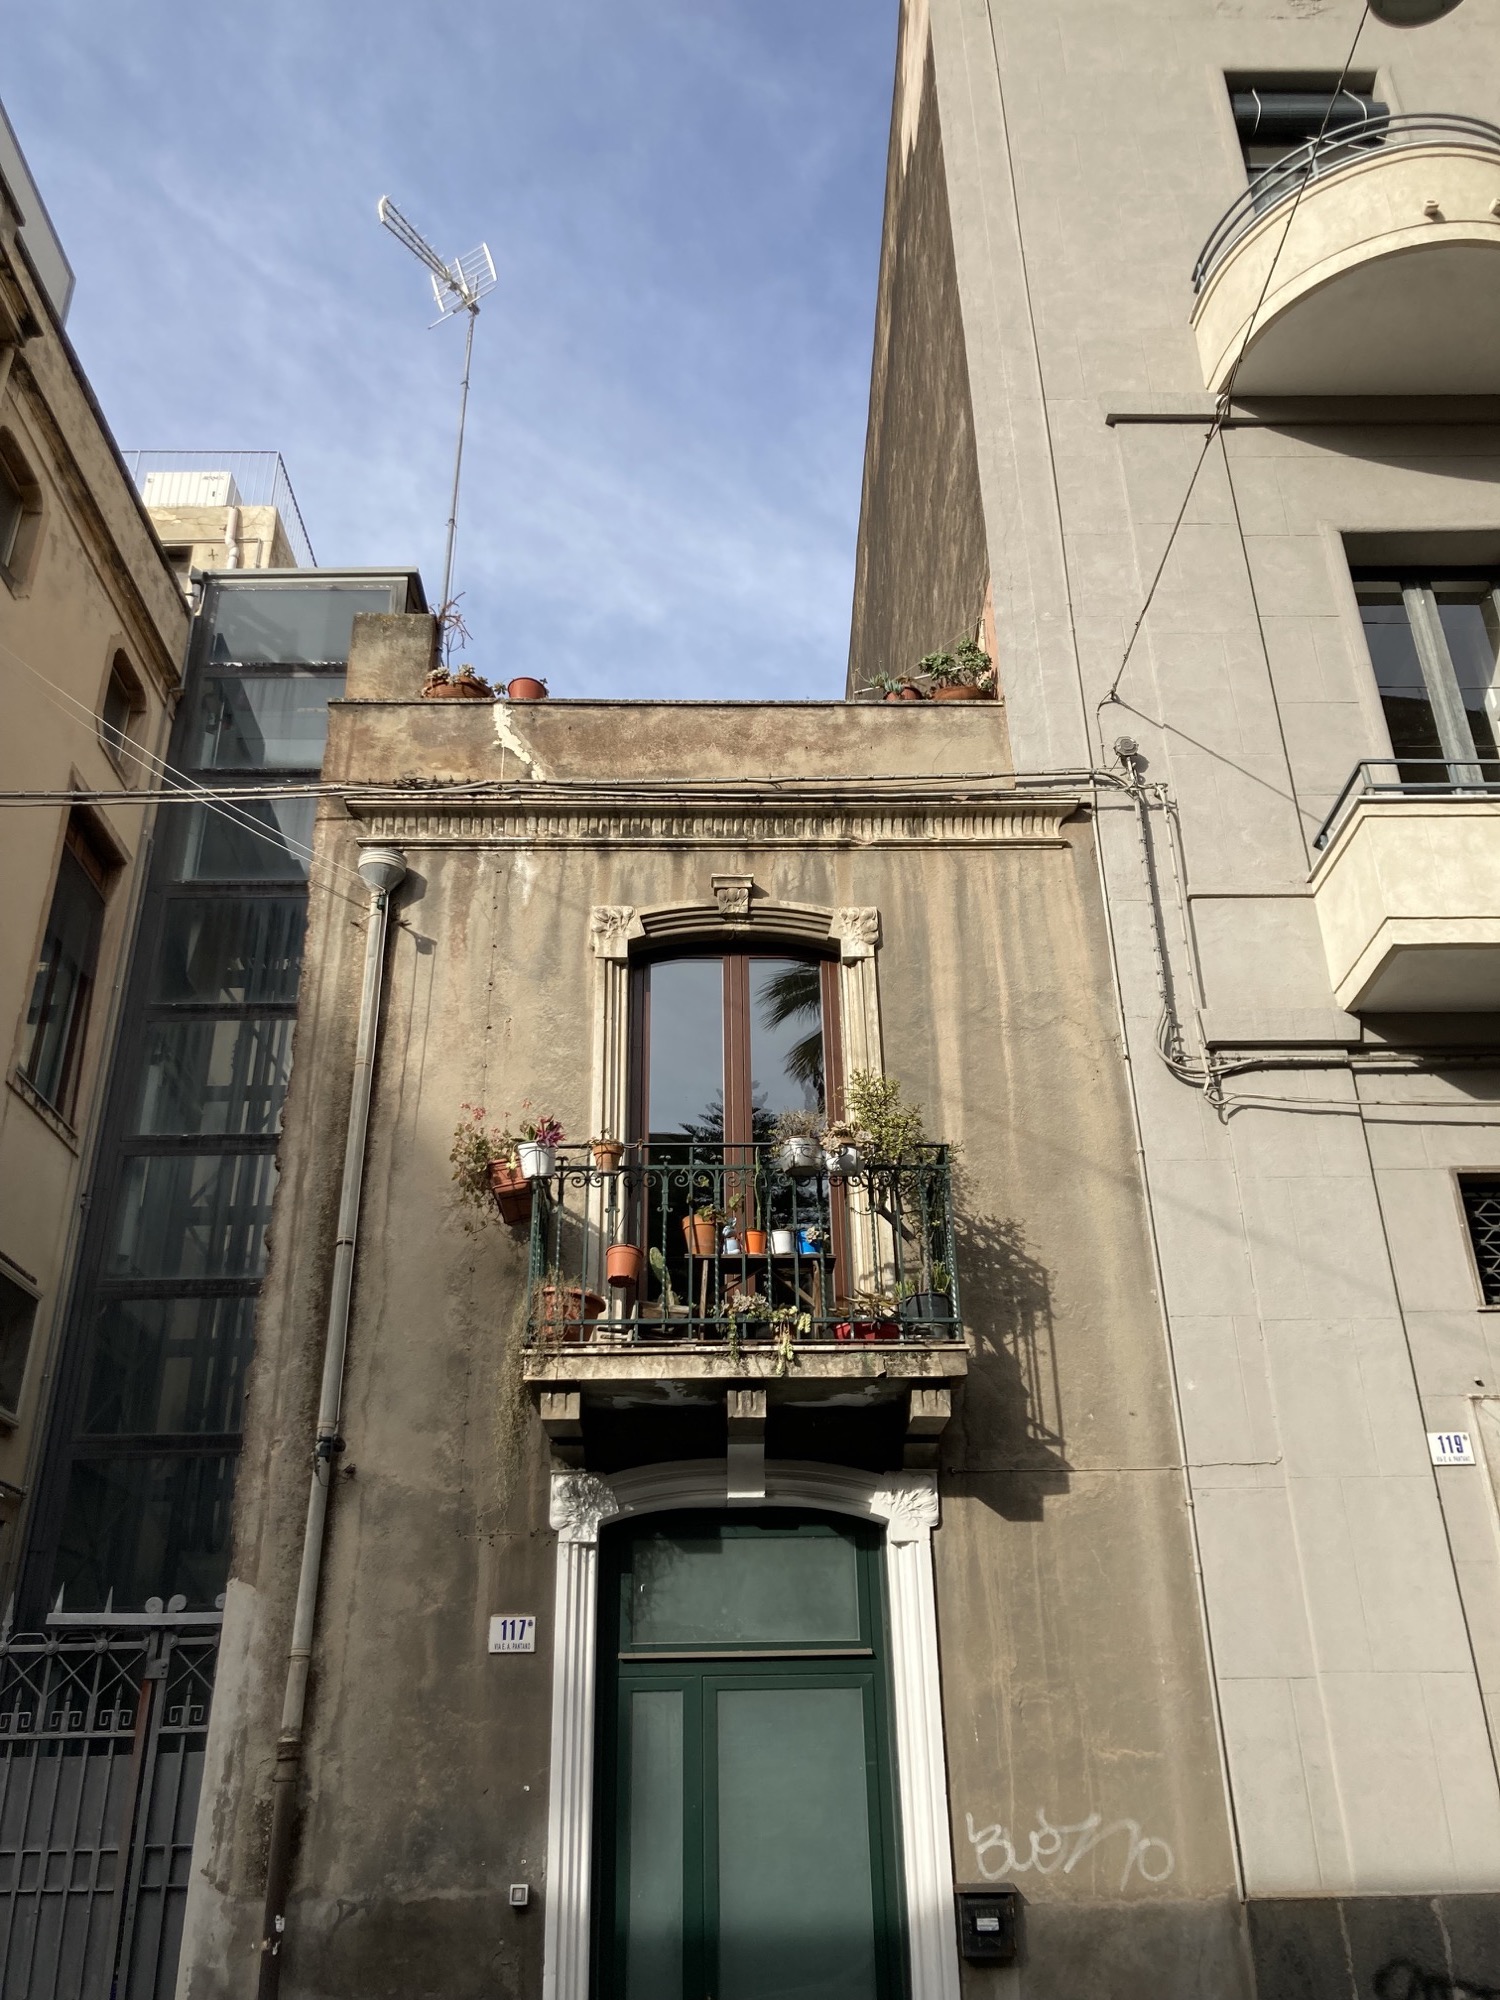 schmales Haus mit typischem sizilianischem Stil: hohes Fenster, davor ein sehr schmaler Balkon mit vielen Blumentöpfen